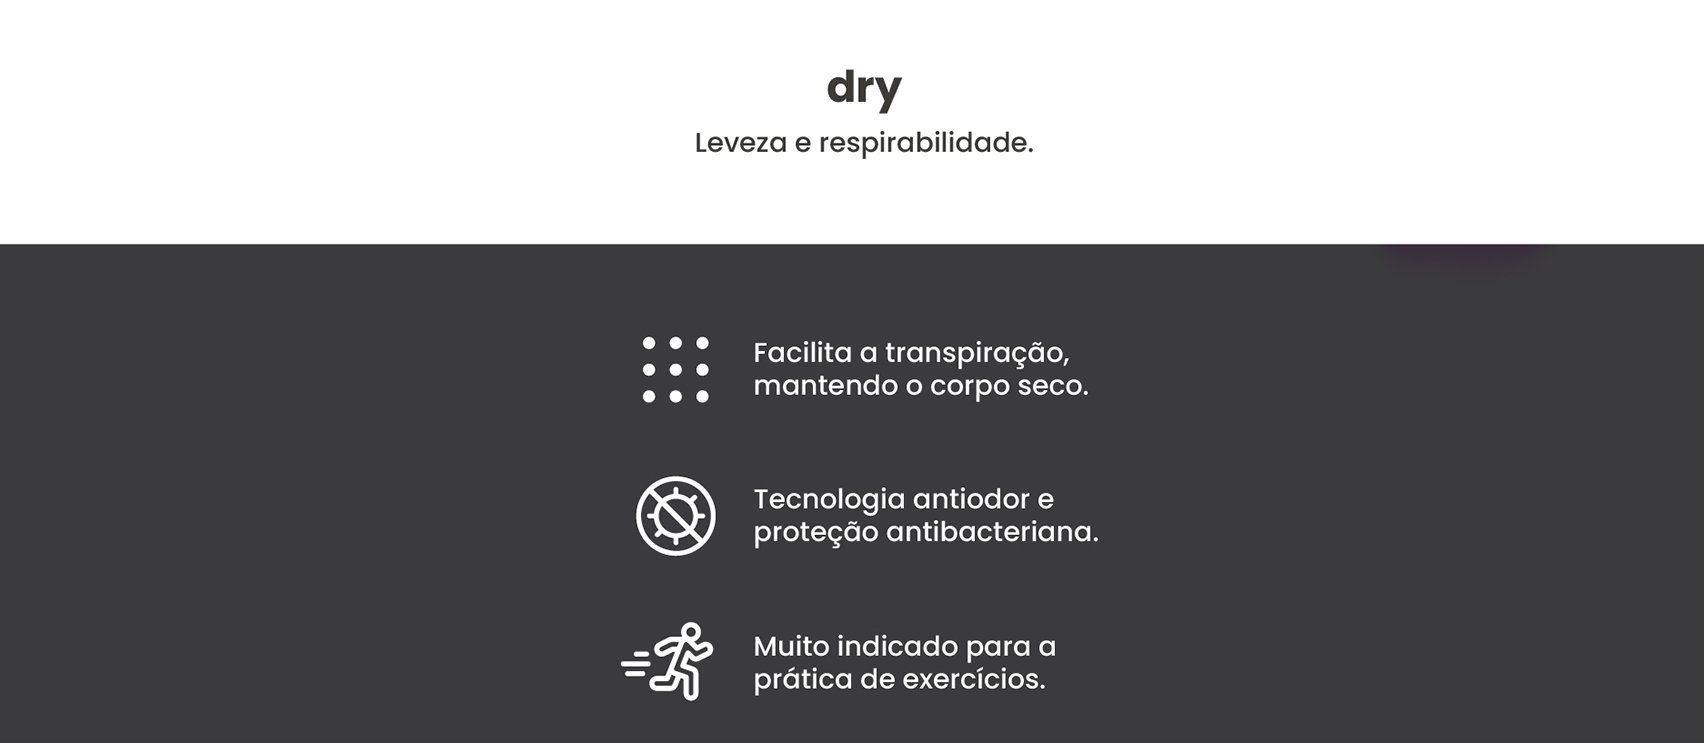 4-atributos-dry-2